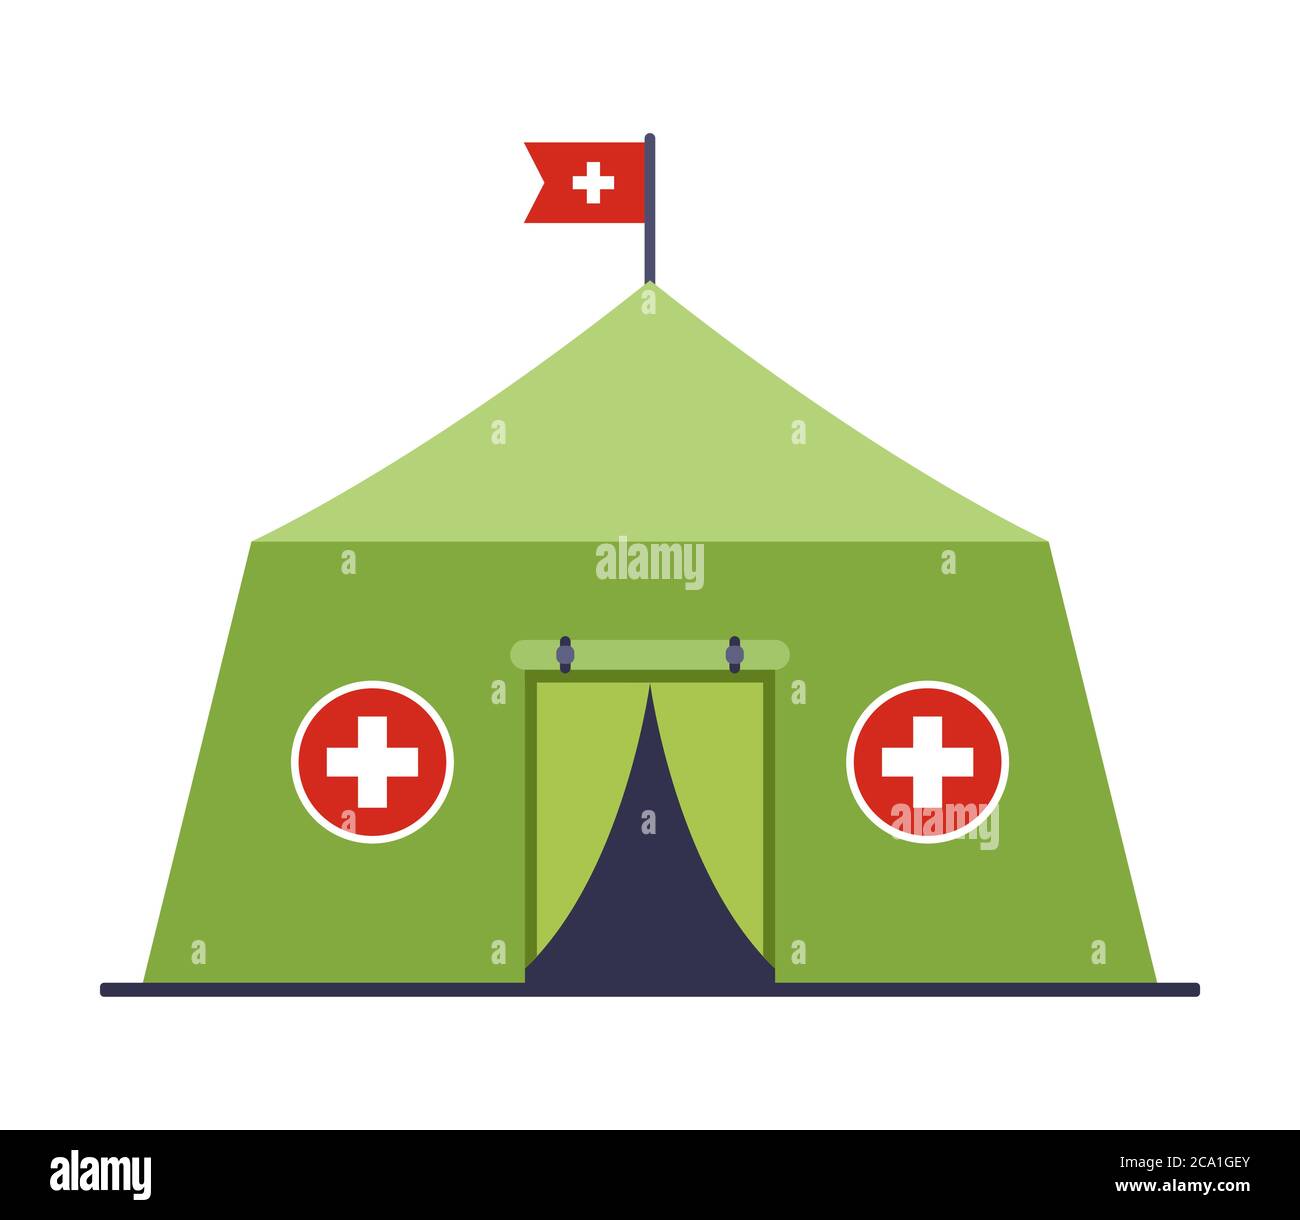 Militärisches medizinisches Zelt, das einem Patienten in einer klingenden Situation erste Hilfe leistet. Flache Vektorgrafik isoliert auf weißem Hintergrund. Stock Vektor